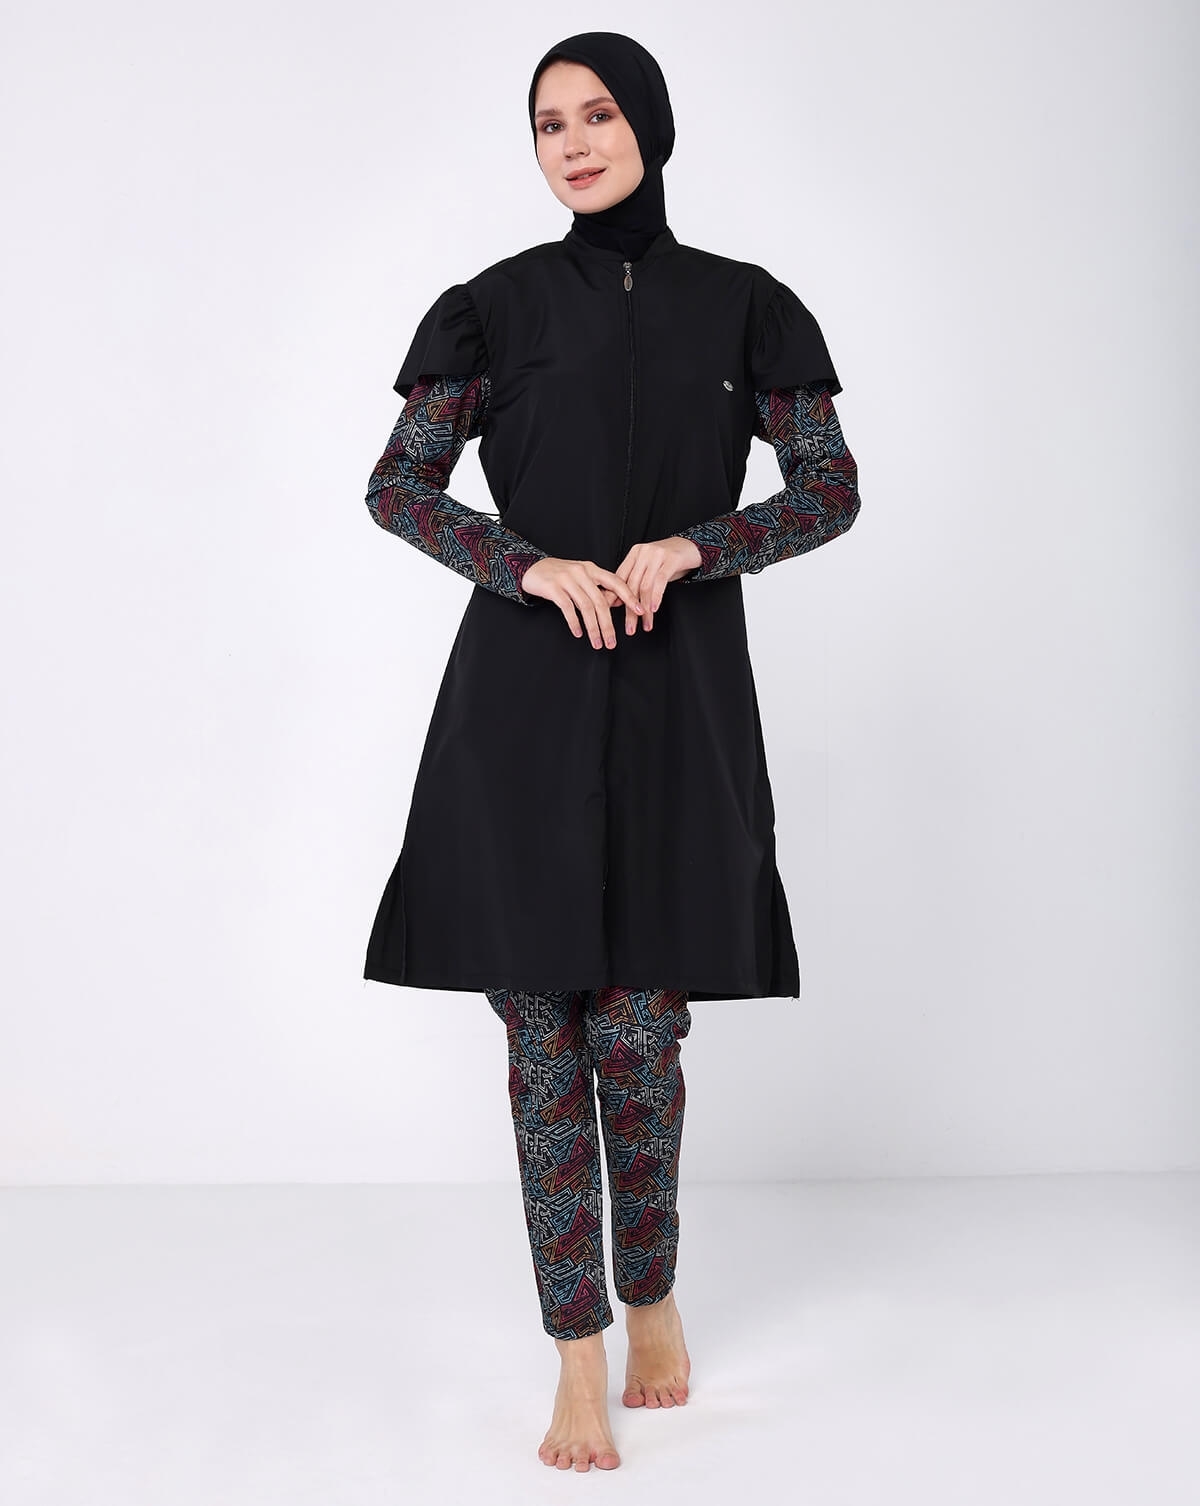 Tesmay Parachute Fabric Hijab Swimsuit 2224 | Tesettür Mayom.com ...